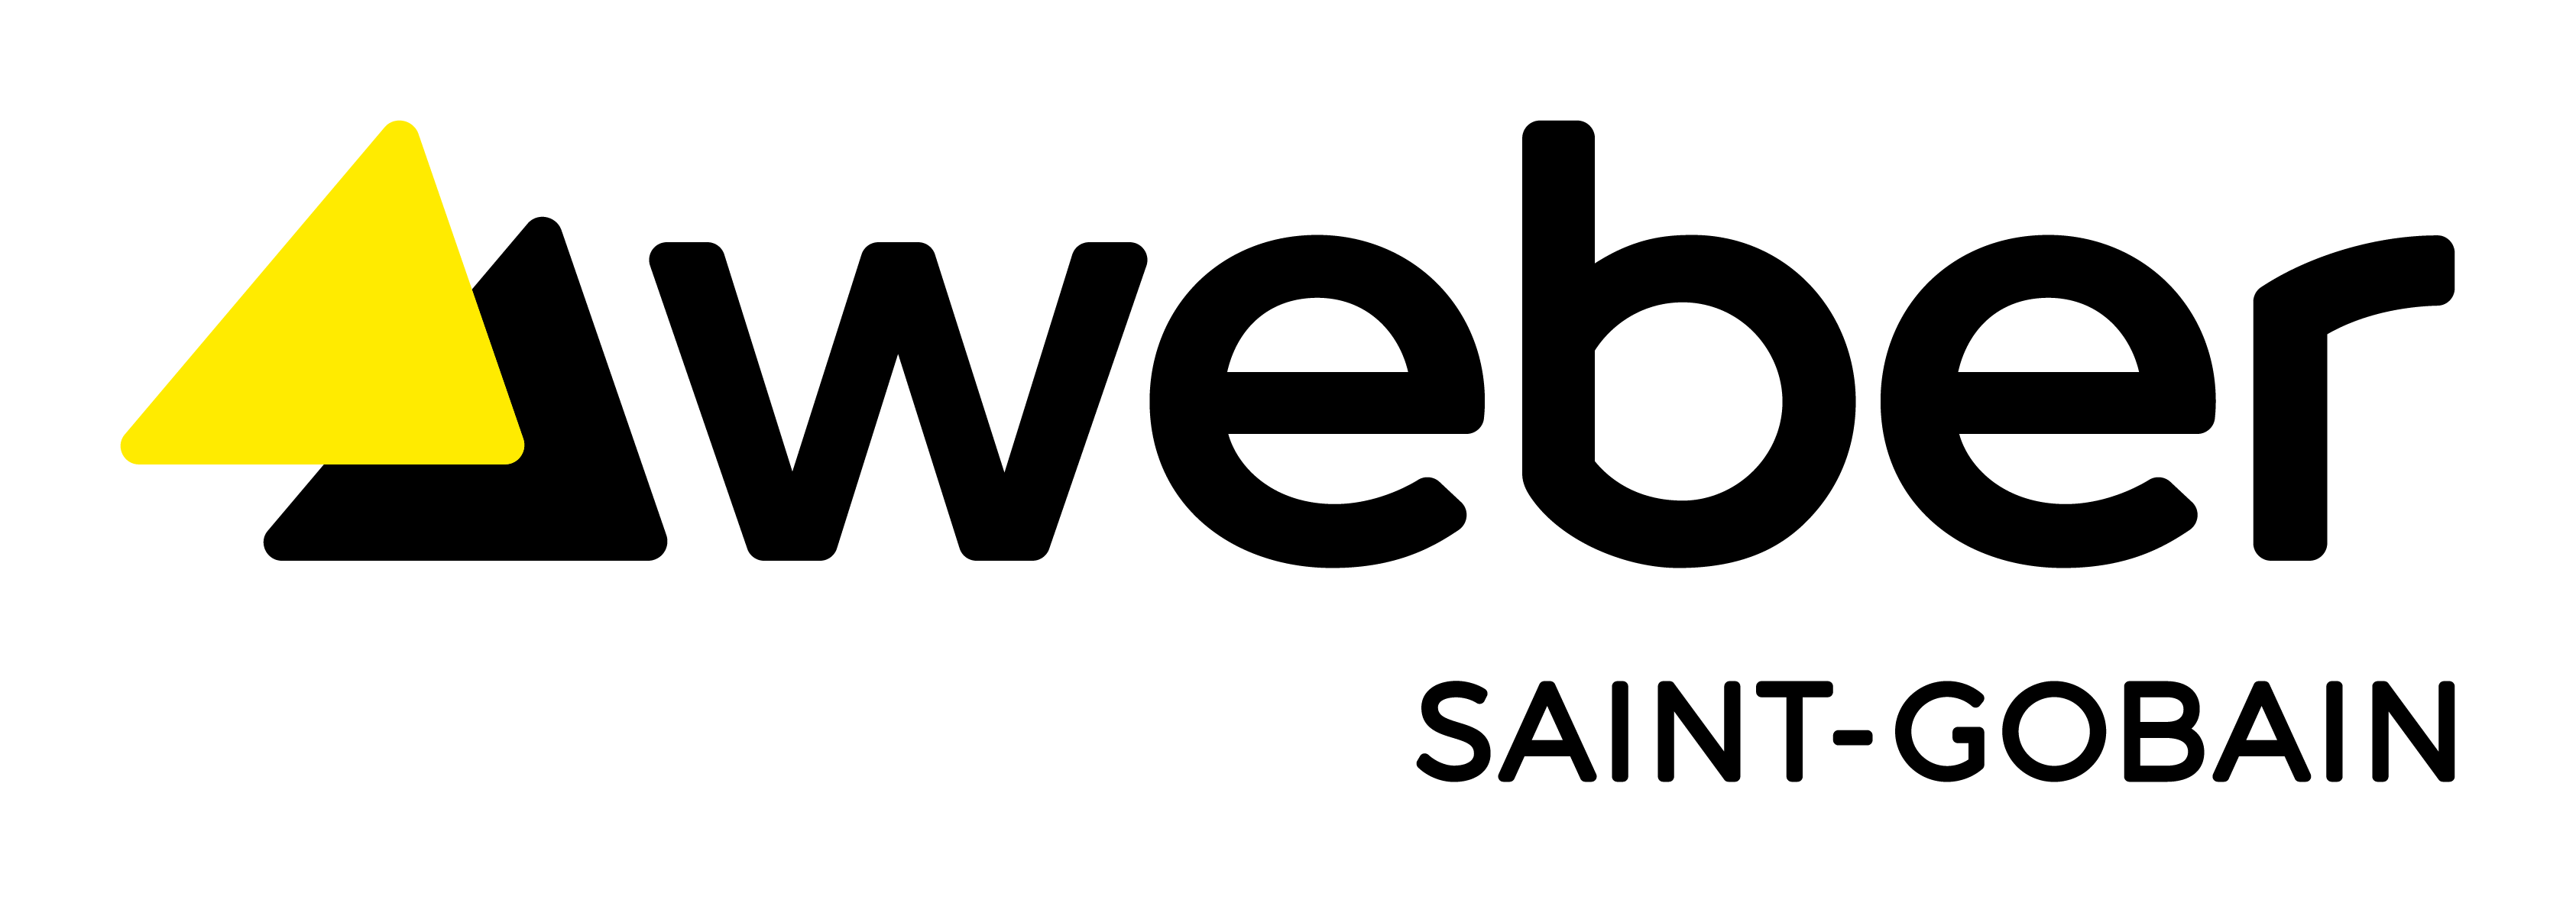 logo SAINT GOBAIN WEBER